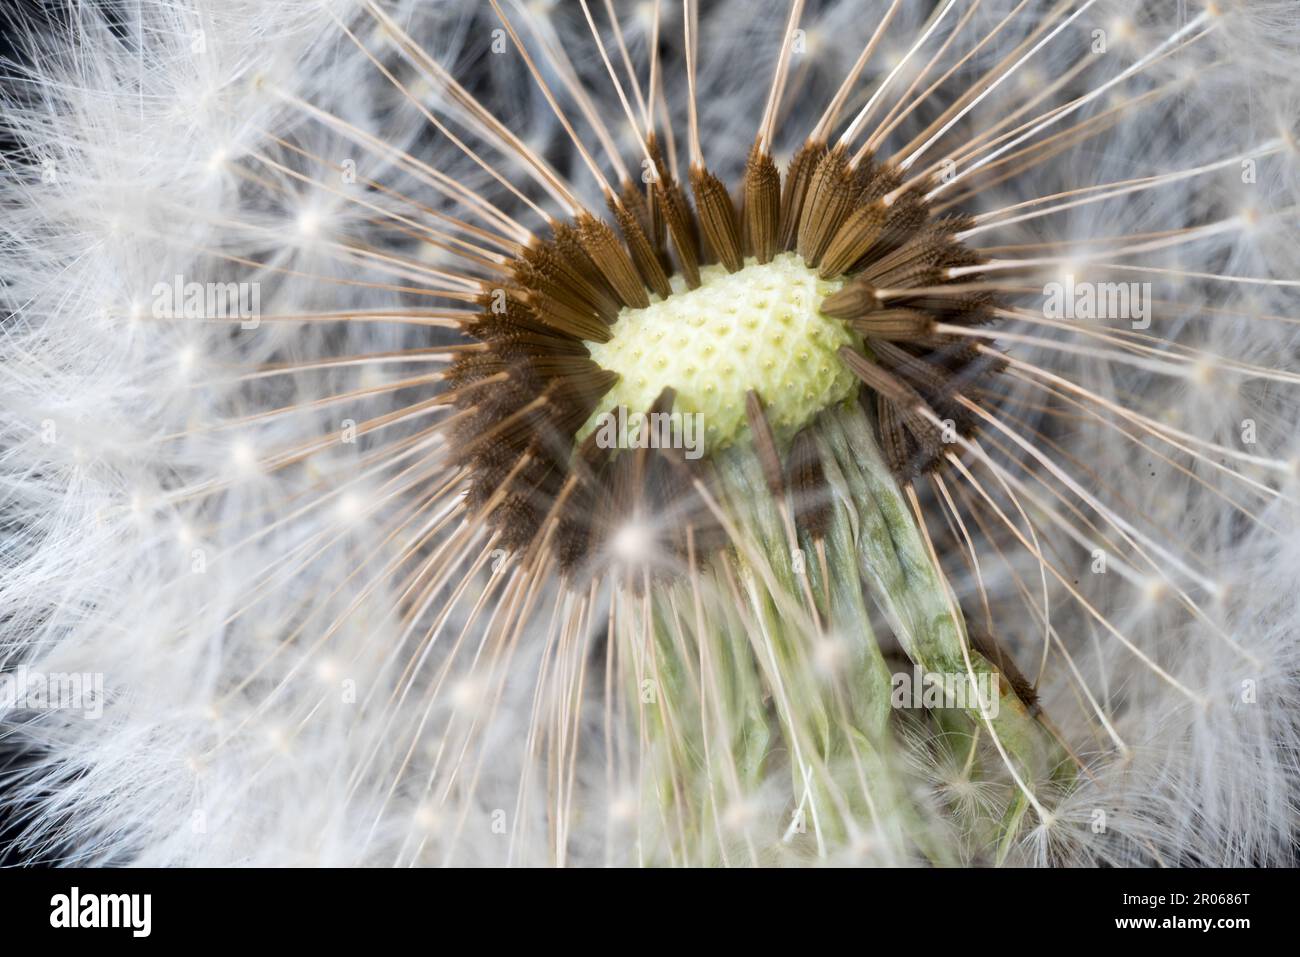 foto macro ad un bel soffione con i suoi semi, i semi del soffione che volano in primavera Stock Photo